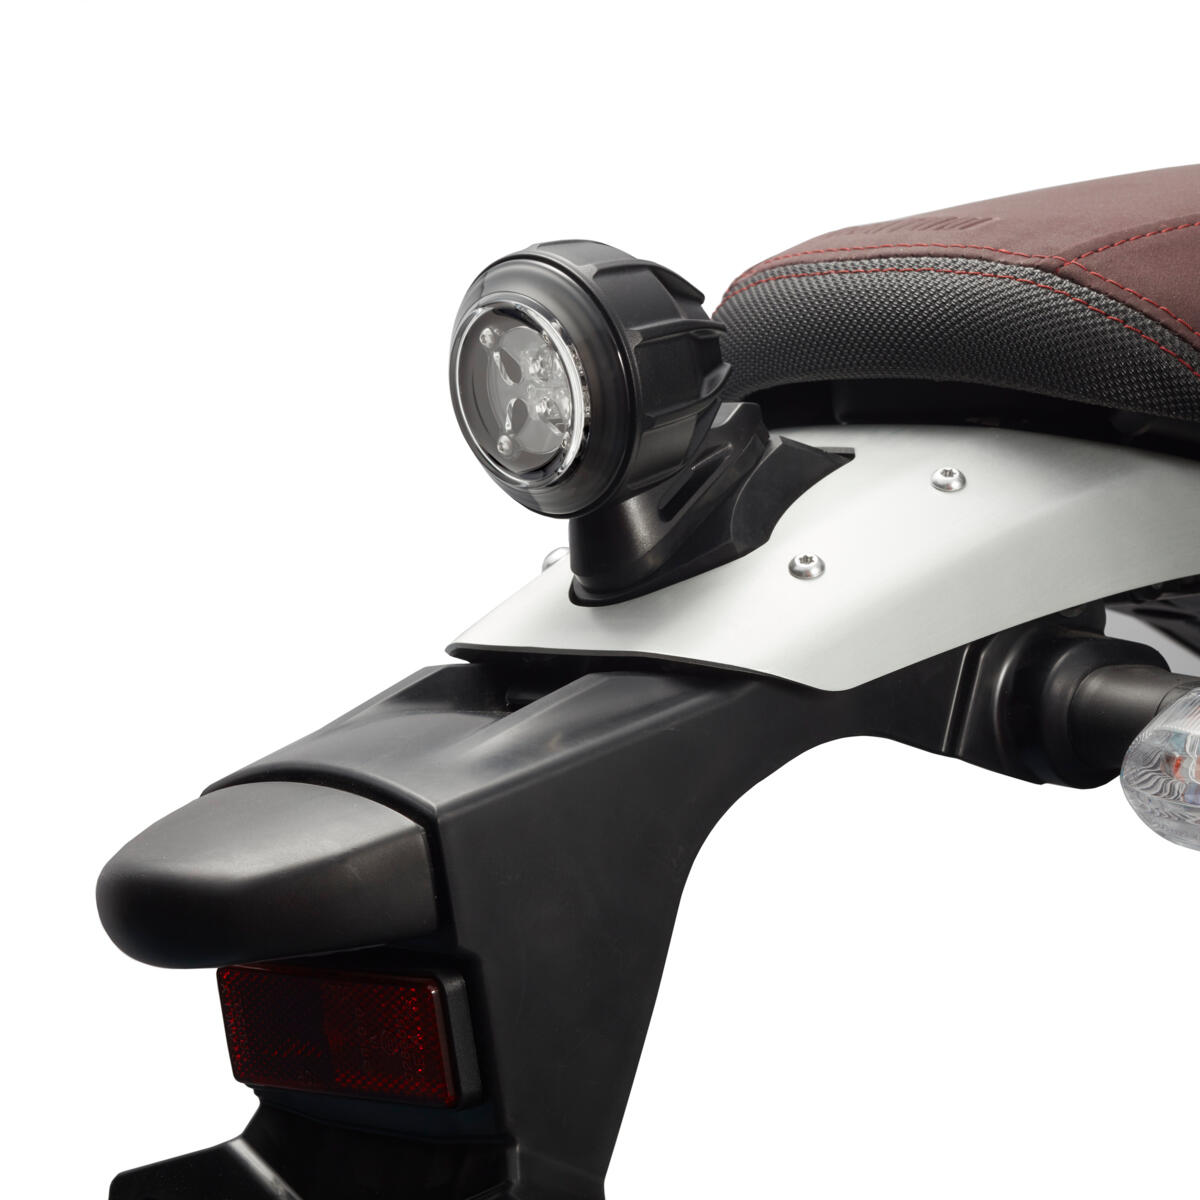 Led achterlicht om je motorfiets een moderne toets te geven in combinatie met een authentieke uitstraling.